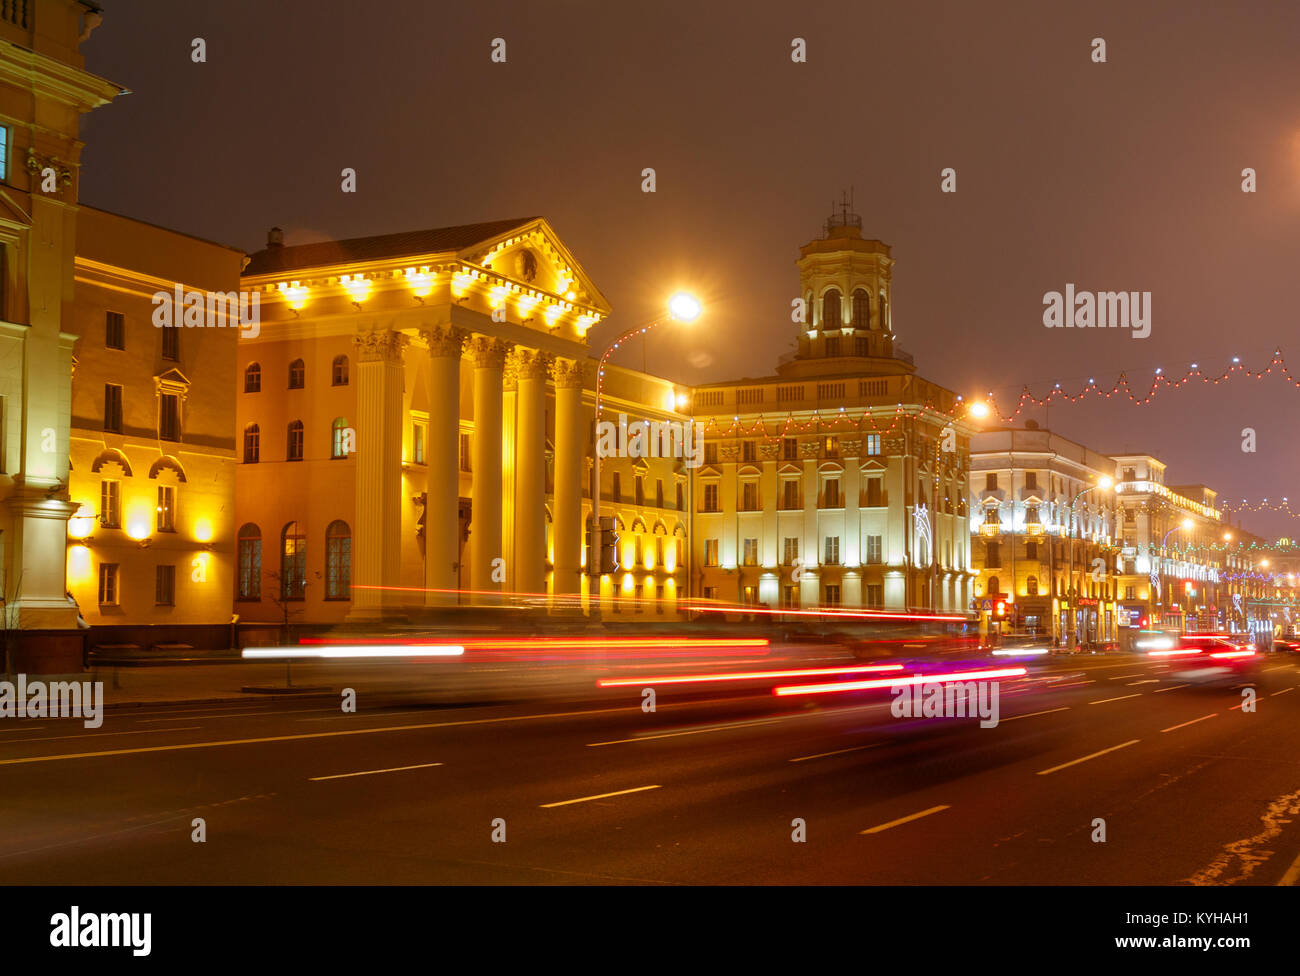 Siège lumineux de l'État Comité de sécurité de la République du Bélarus, le KGB biélorusse. Minsk, Belarus. Banque D'Images